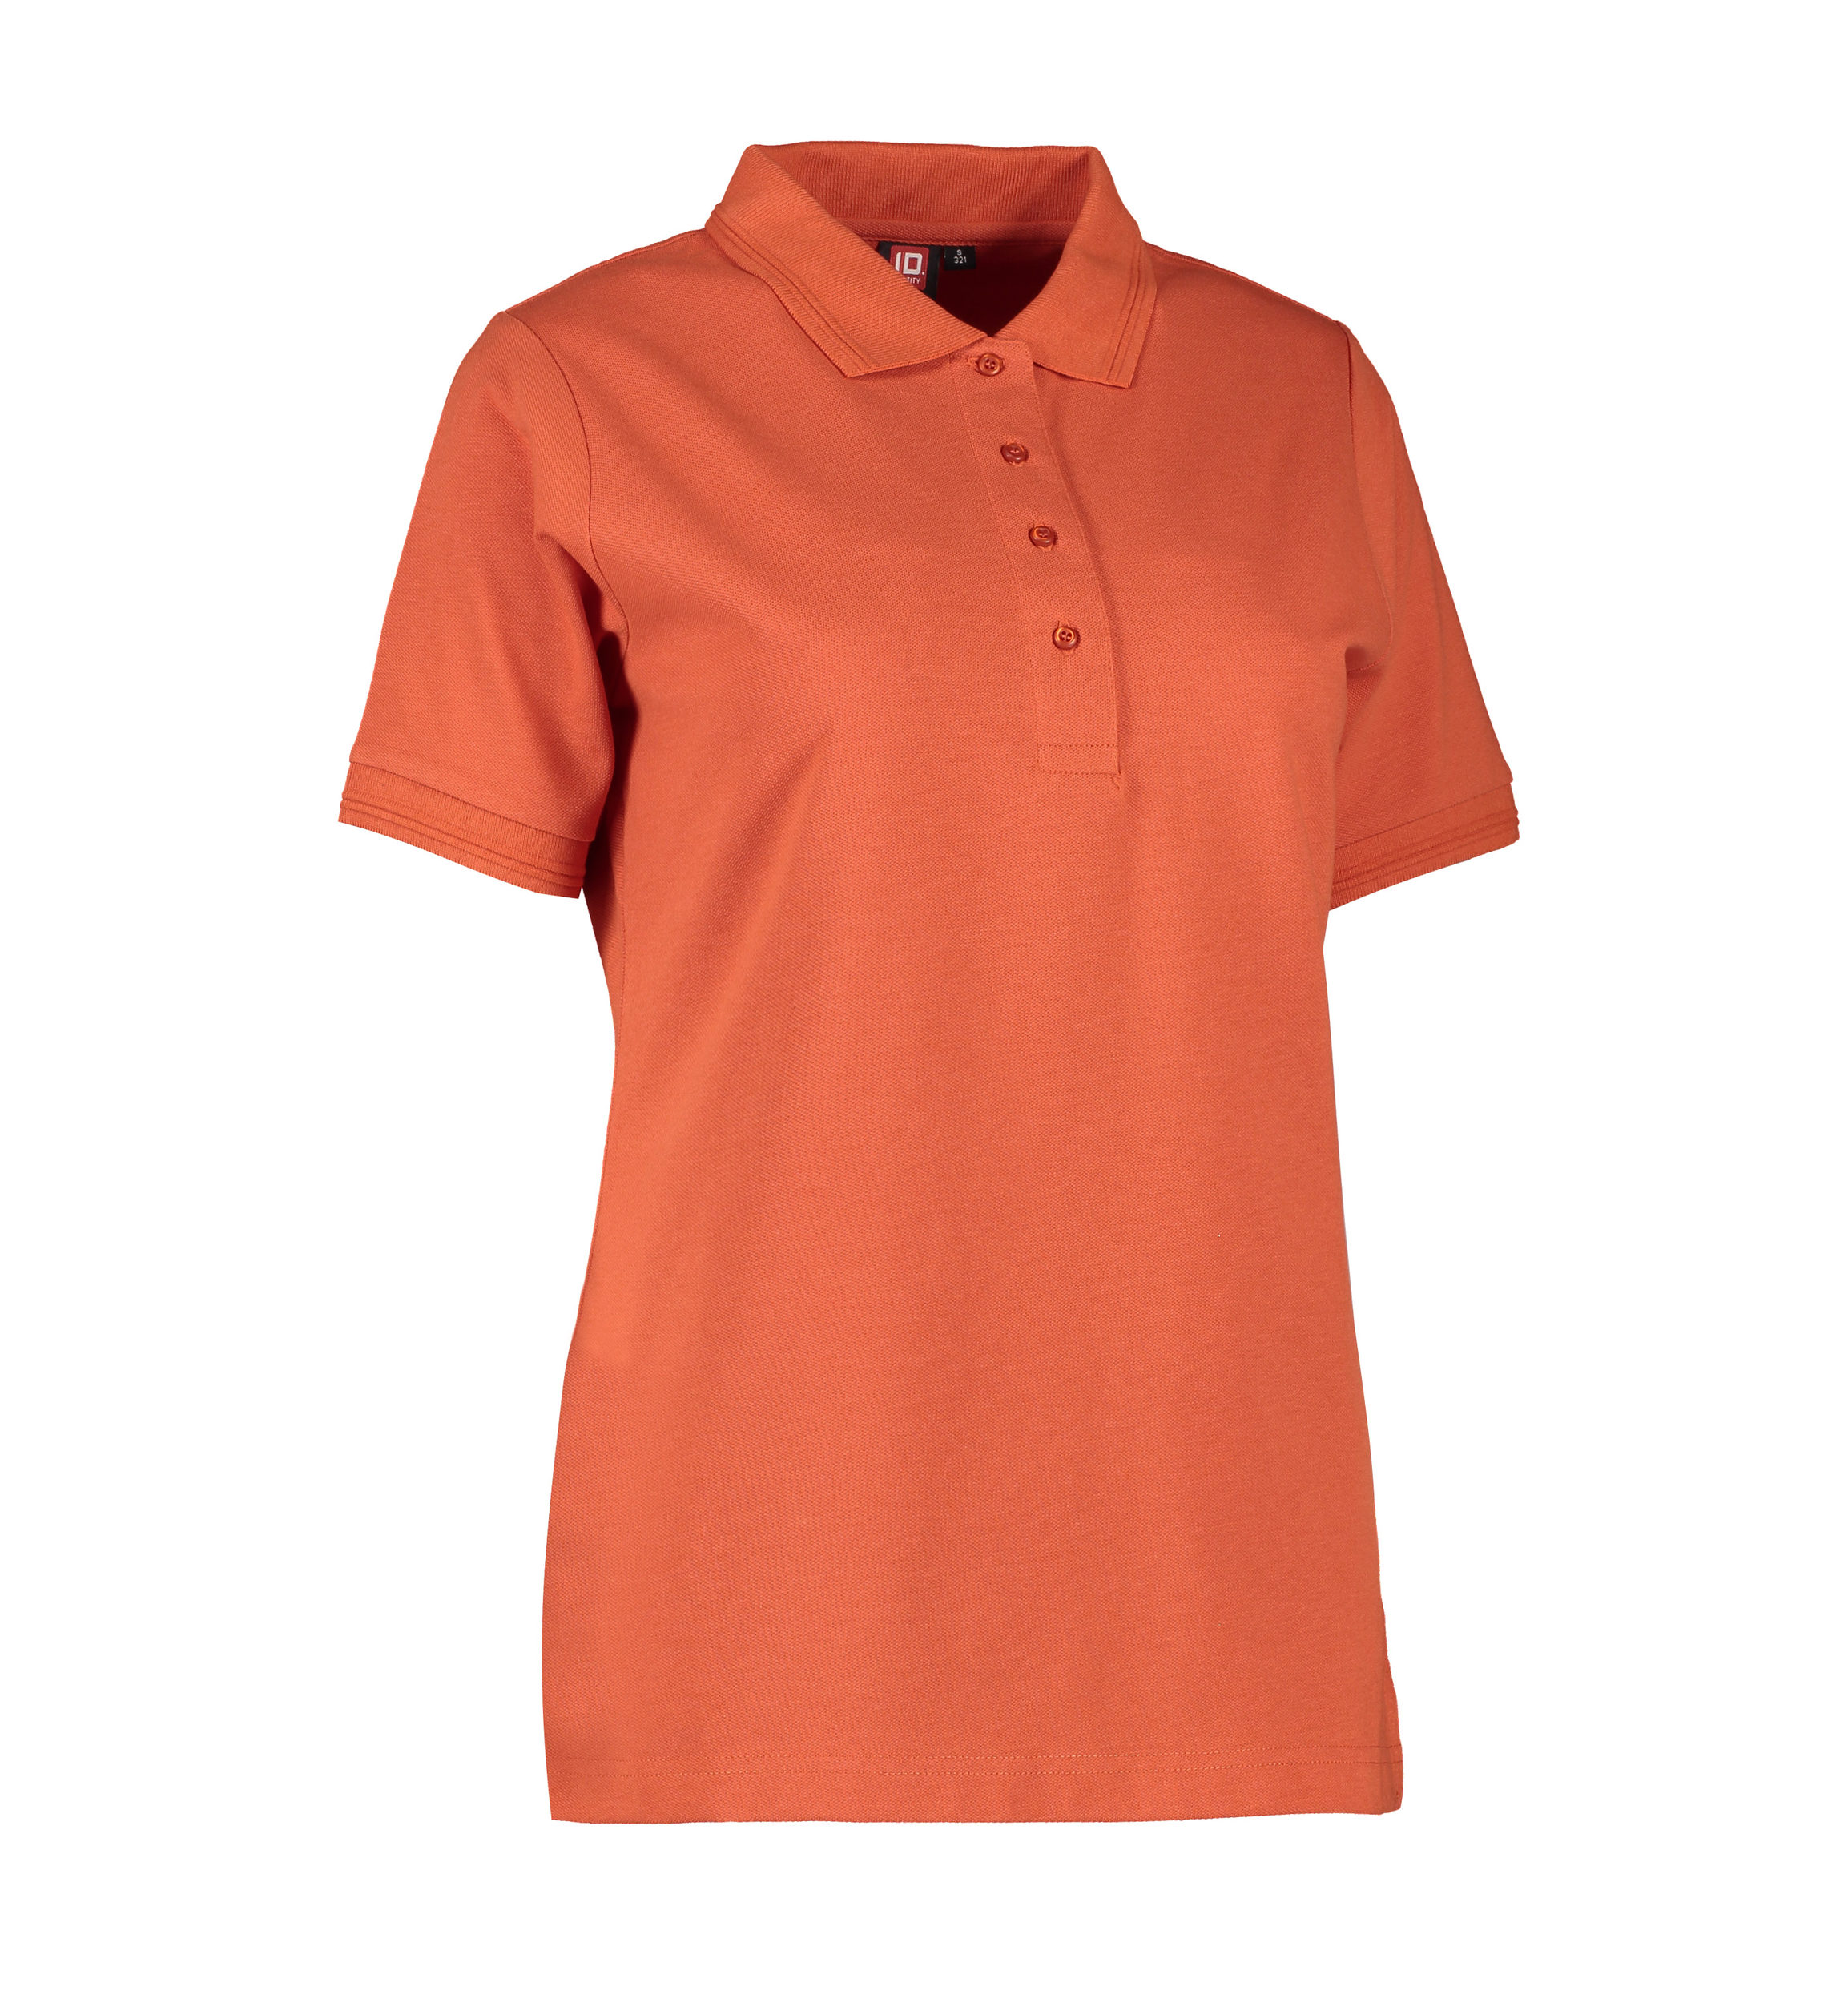 Billede af Koral farvet dame polo t-shirt i slidstærkt materiale - XL hos Sygeplejebutikken.dk